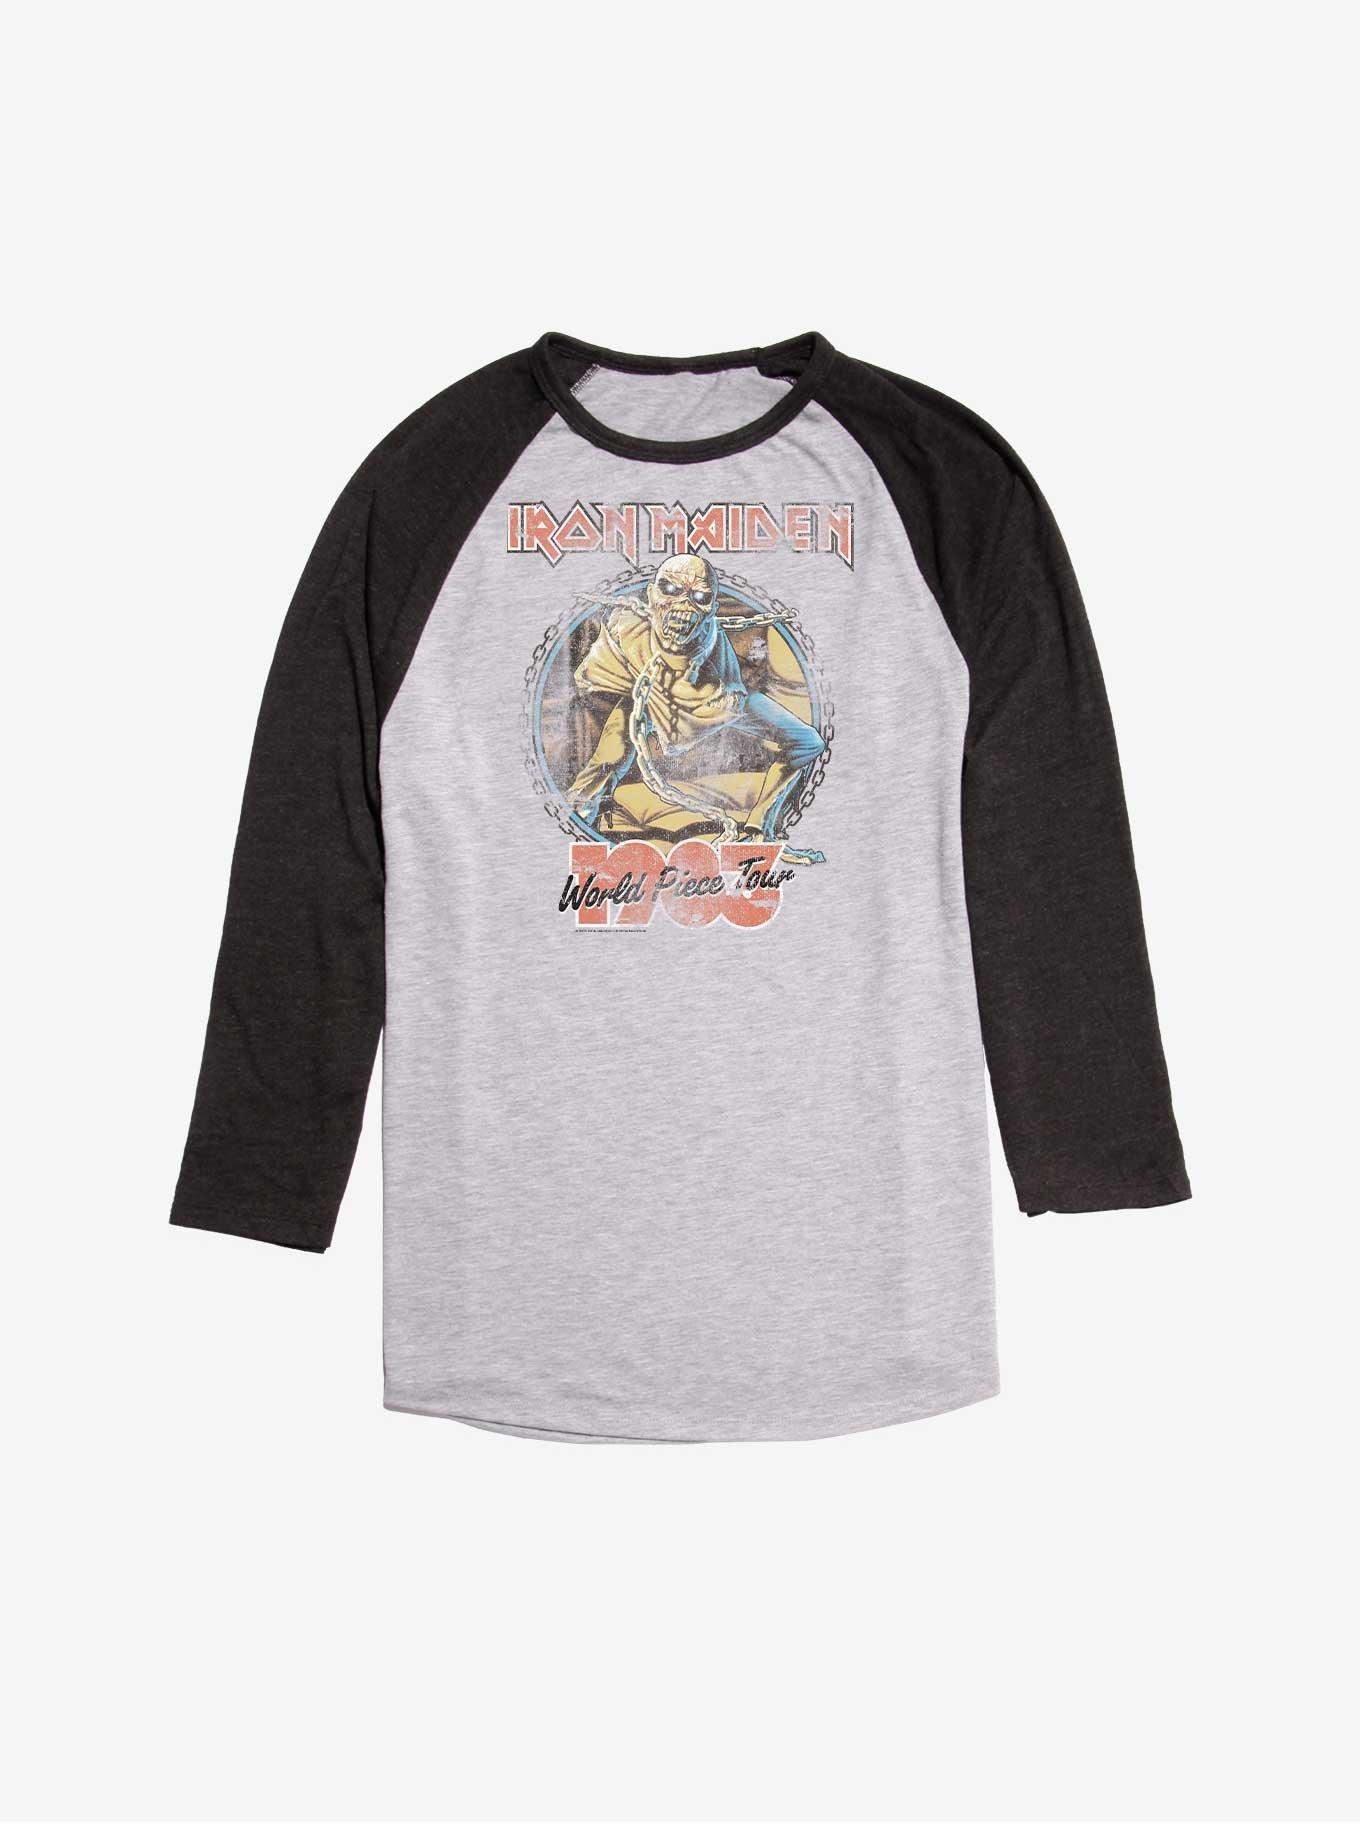 Iron Maiden Vintage World Piece Tour 1983 Raglan T-Shirt